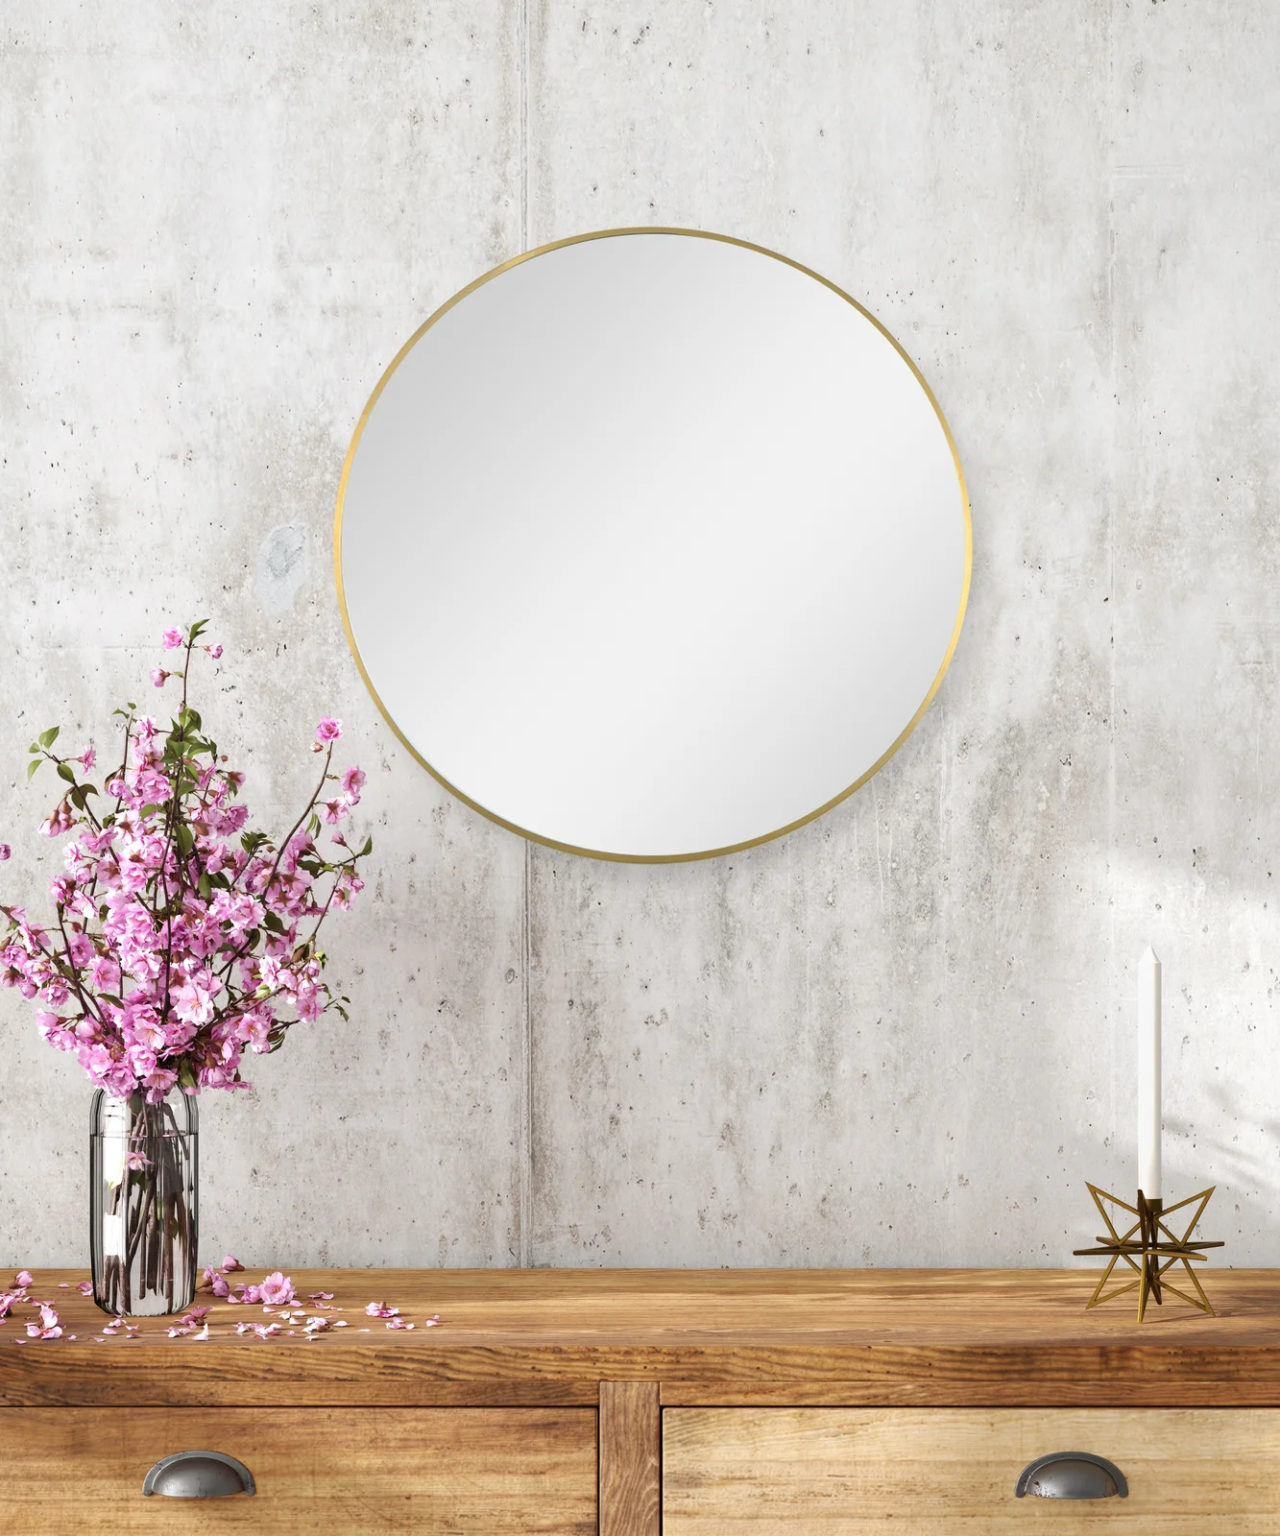 Gương tròn với phần khung tối giản mà tinh tế, phù hợp với không gian hiện đại.